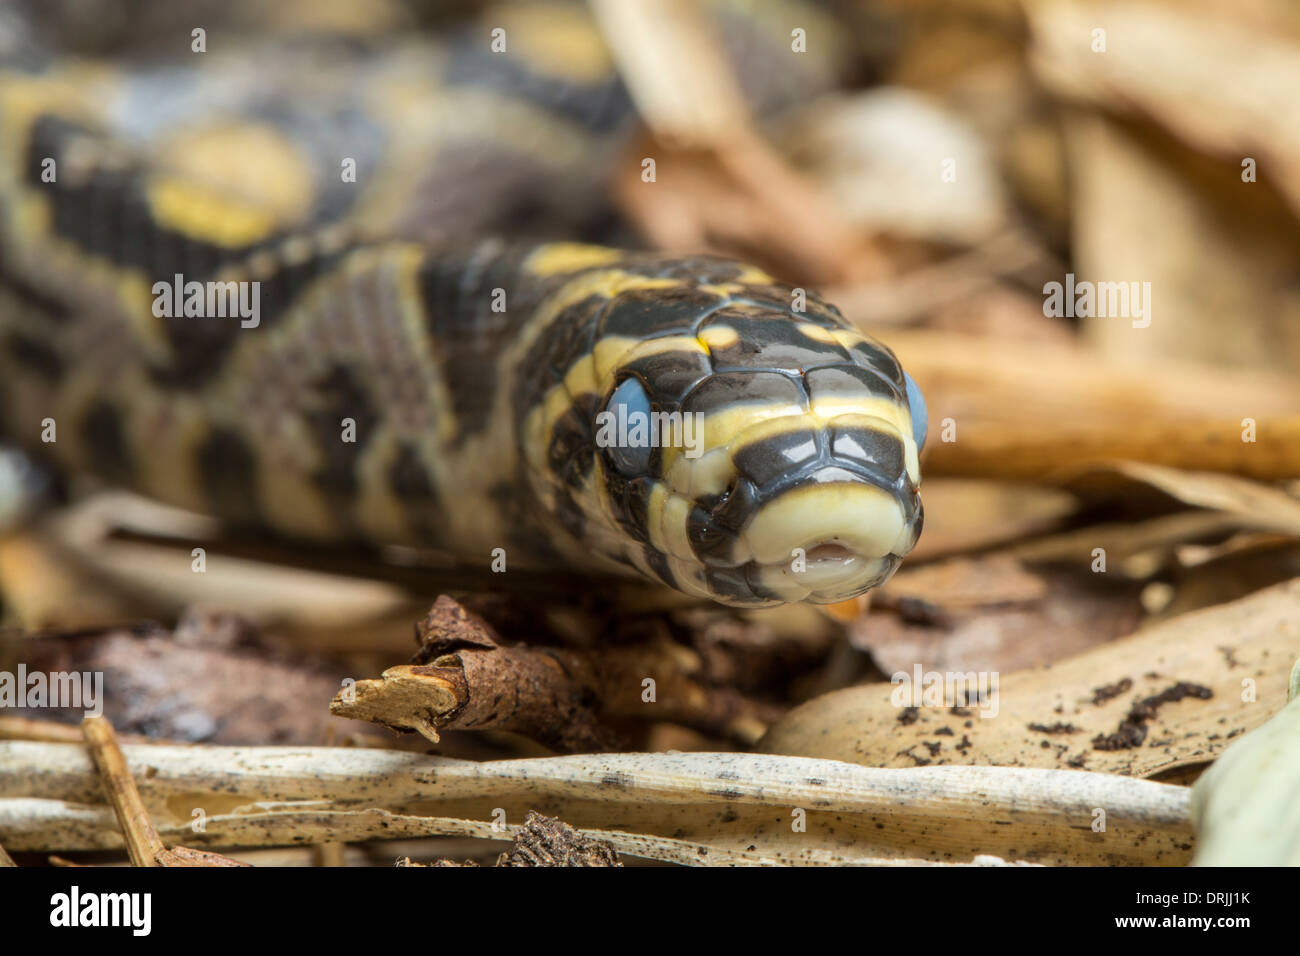 Couleuvre obscure, mandarin ou serpent rat, de la Chine, avec les yeux avant de faire peau Banque D'Images